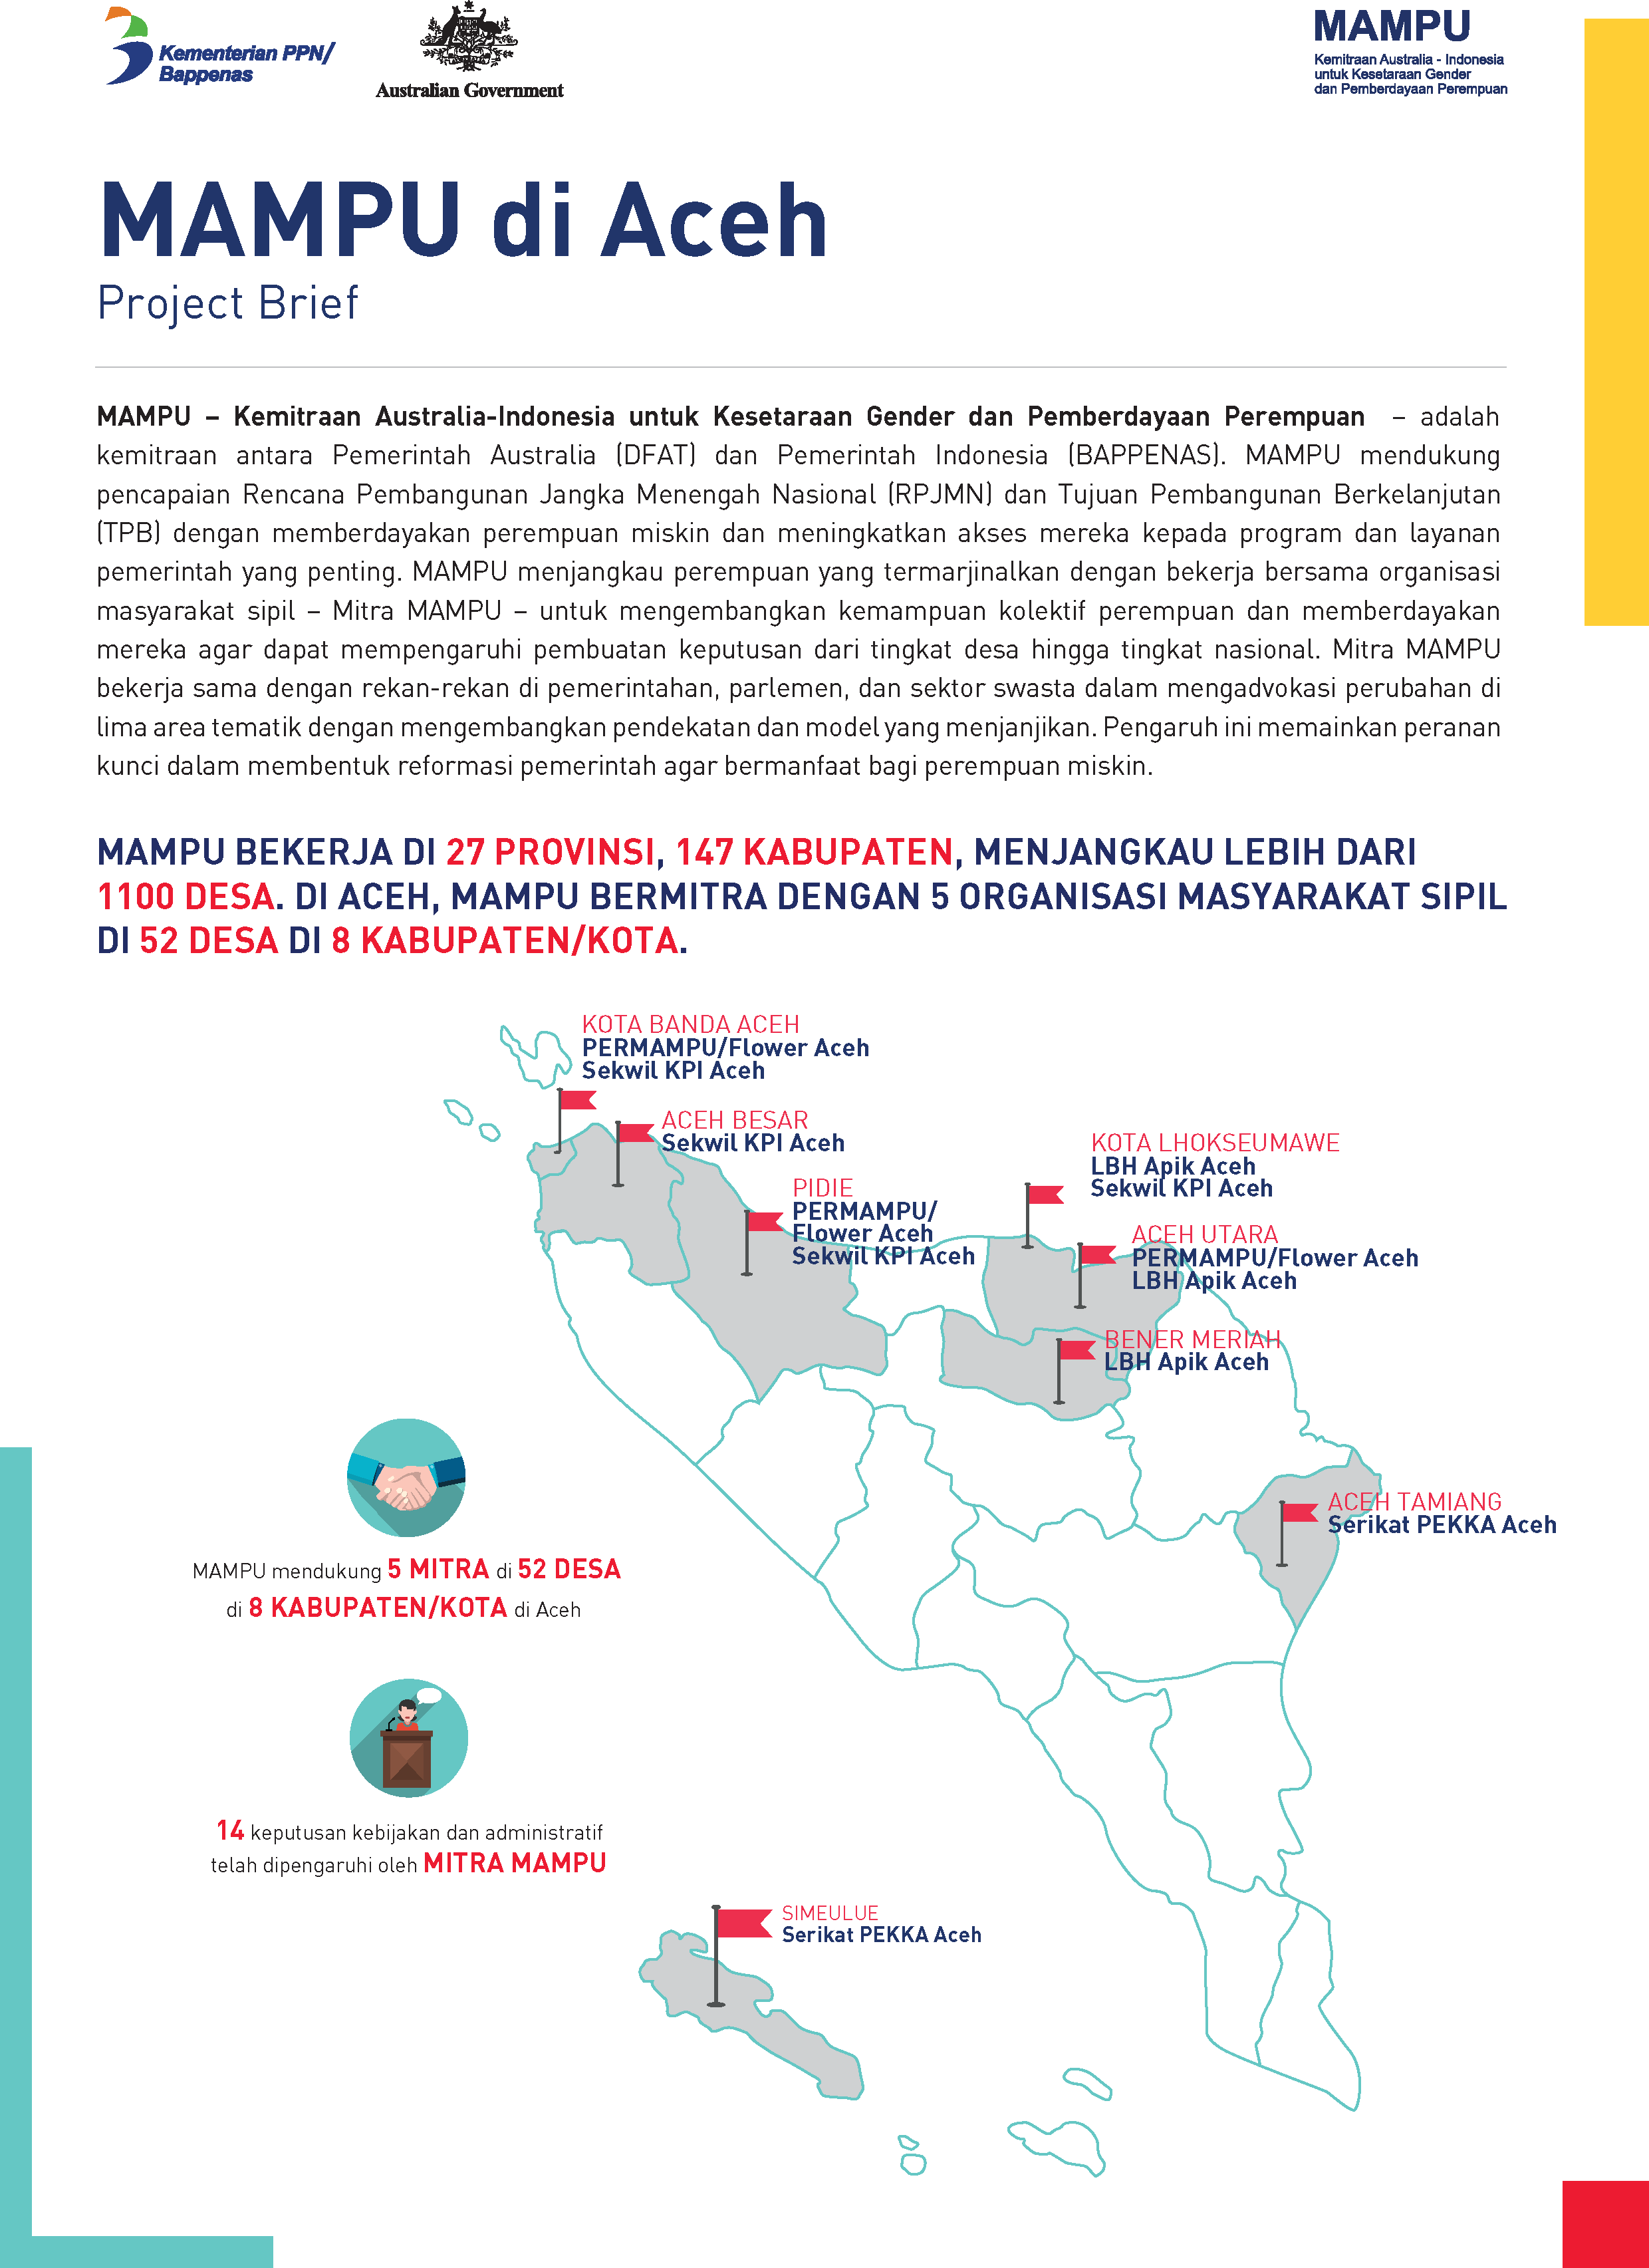 Project Brief: MAMPU di Aceh